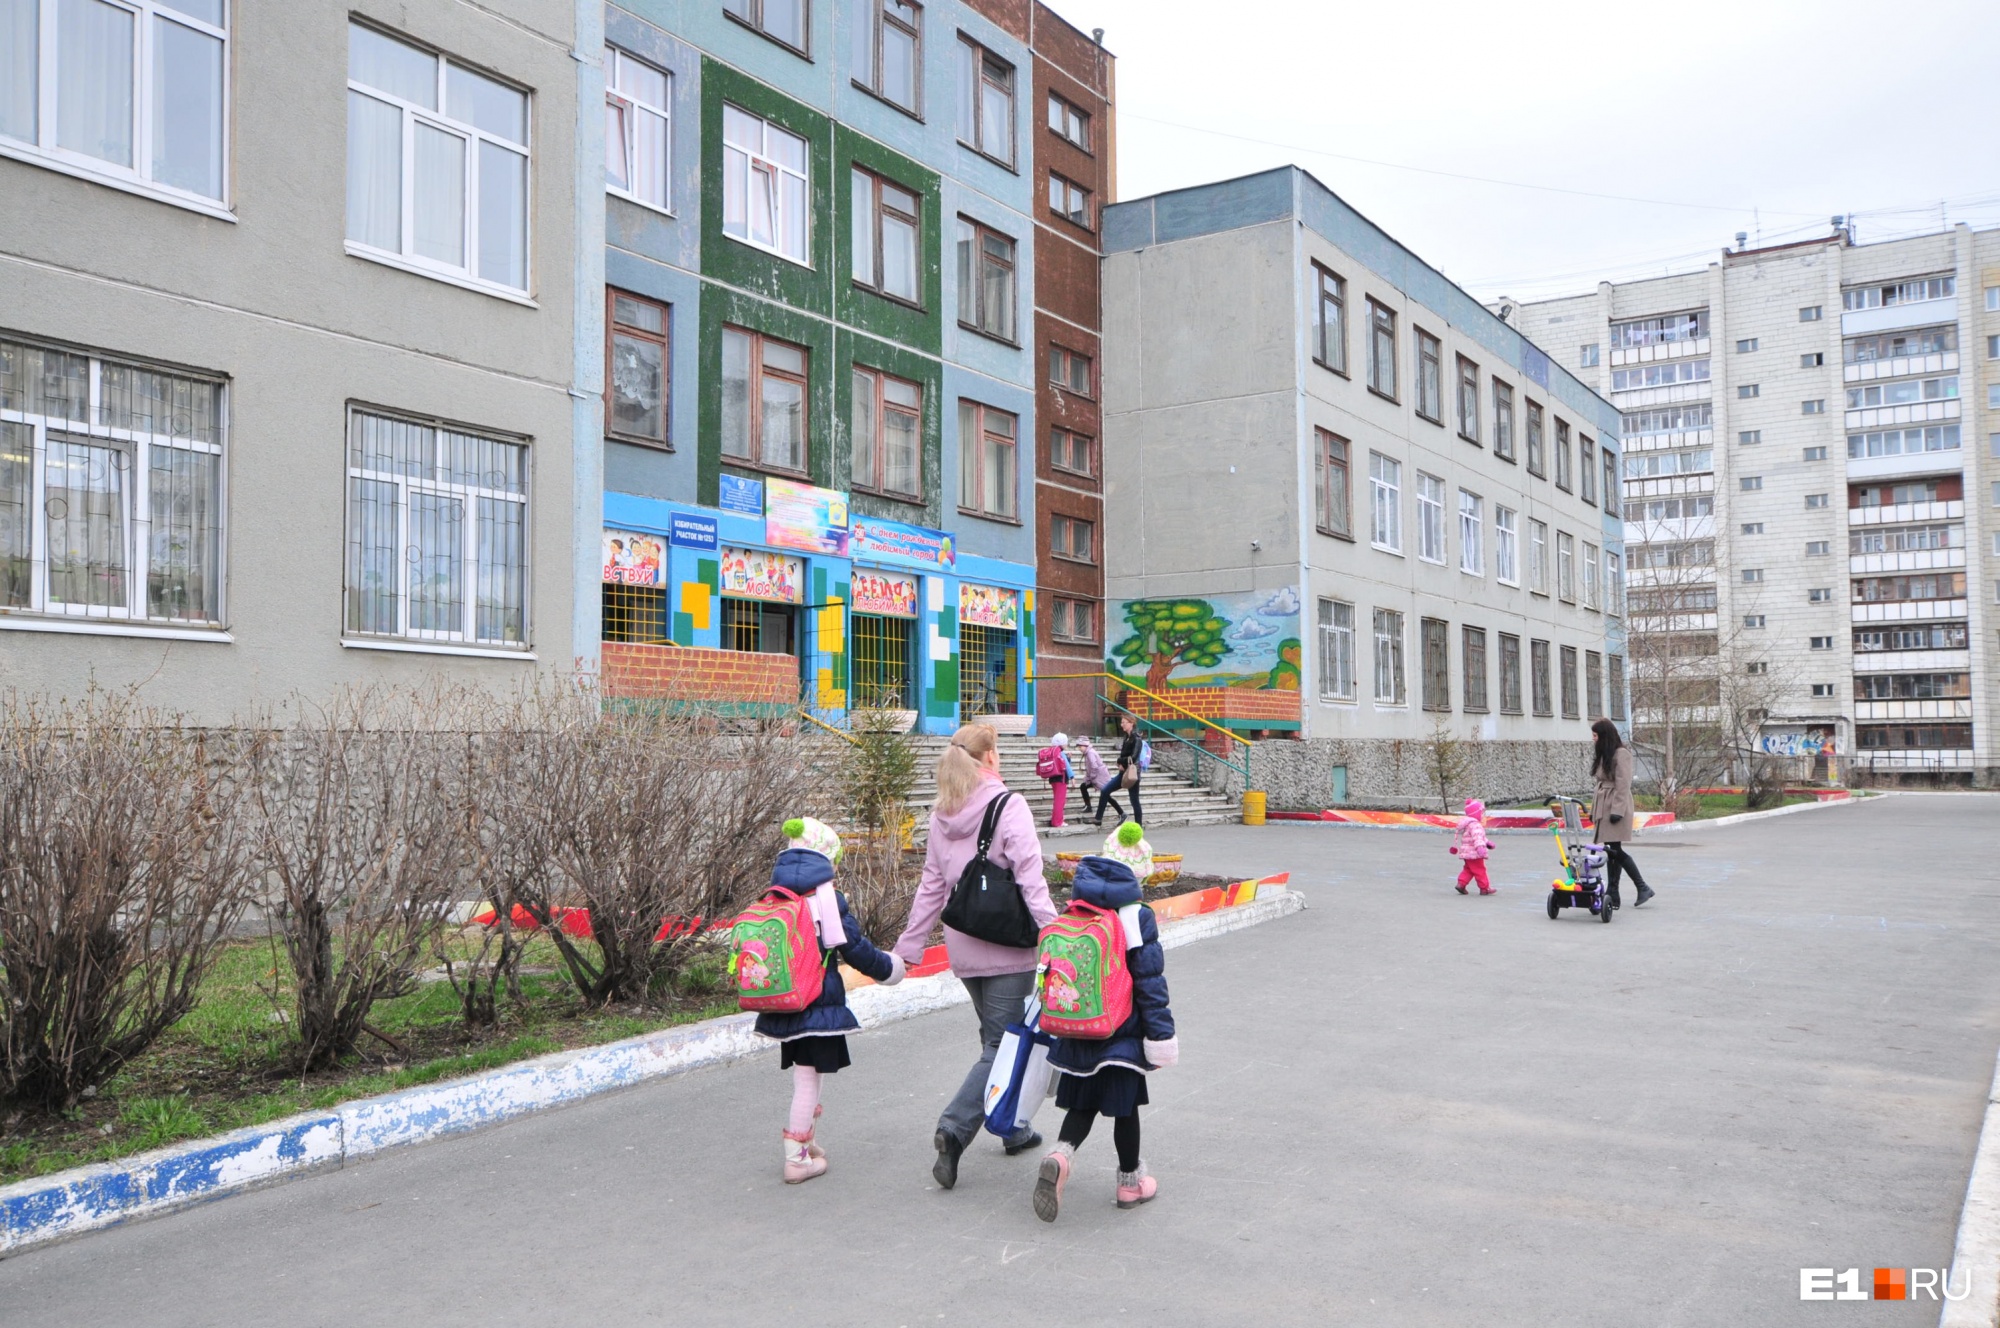 После трагедии в Казани во всех свердловских школах проведут проверки